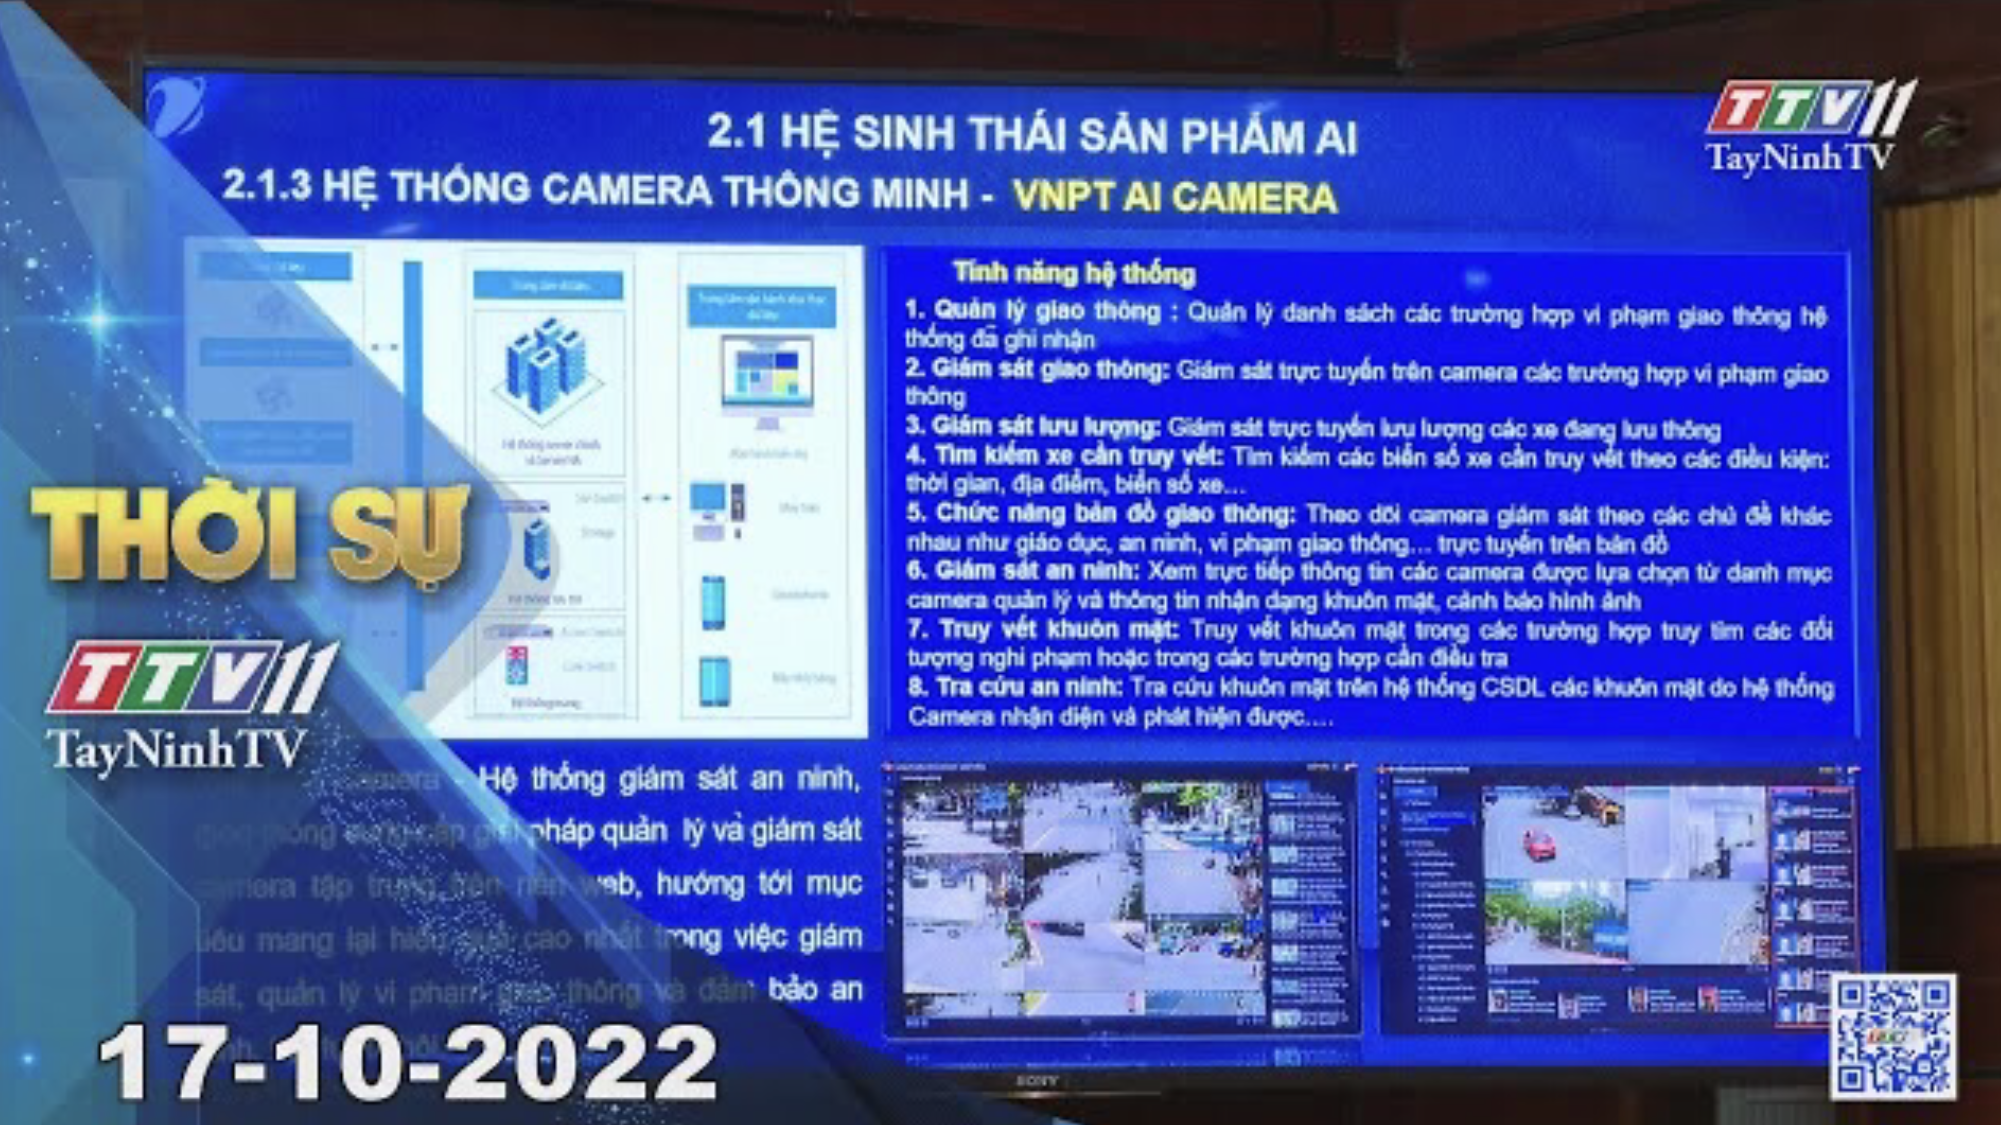 Thời sự Tây Ninh 17-10-2022 | Tin tức hôm nay | TayNinhTV